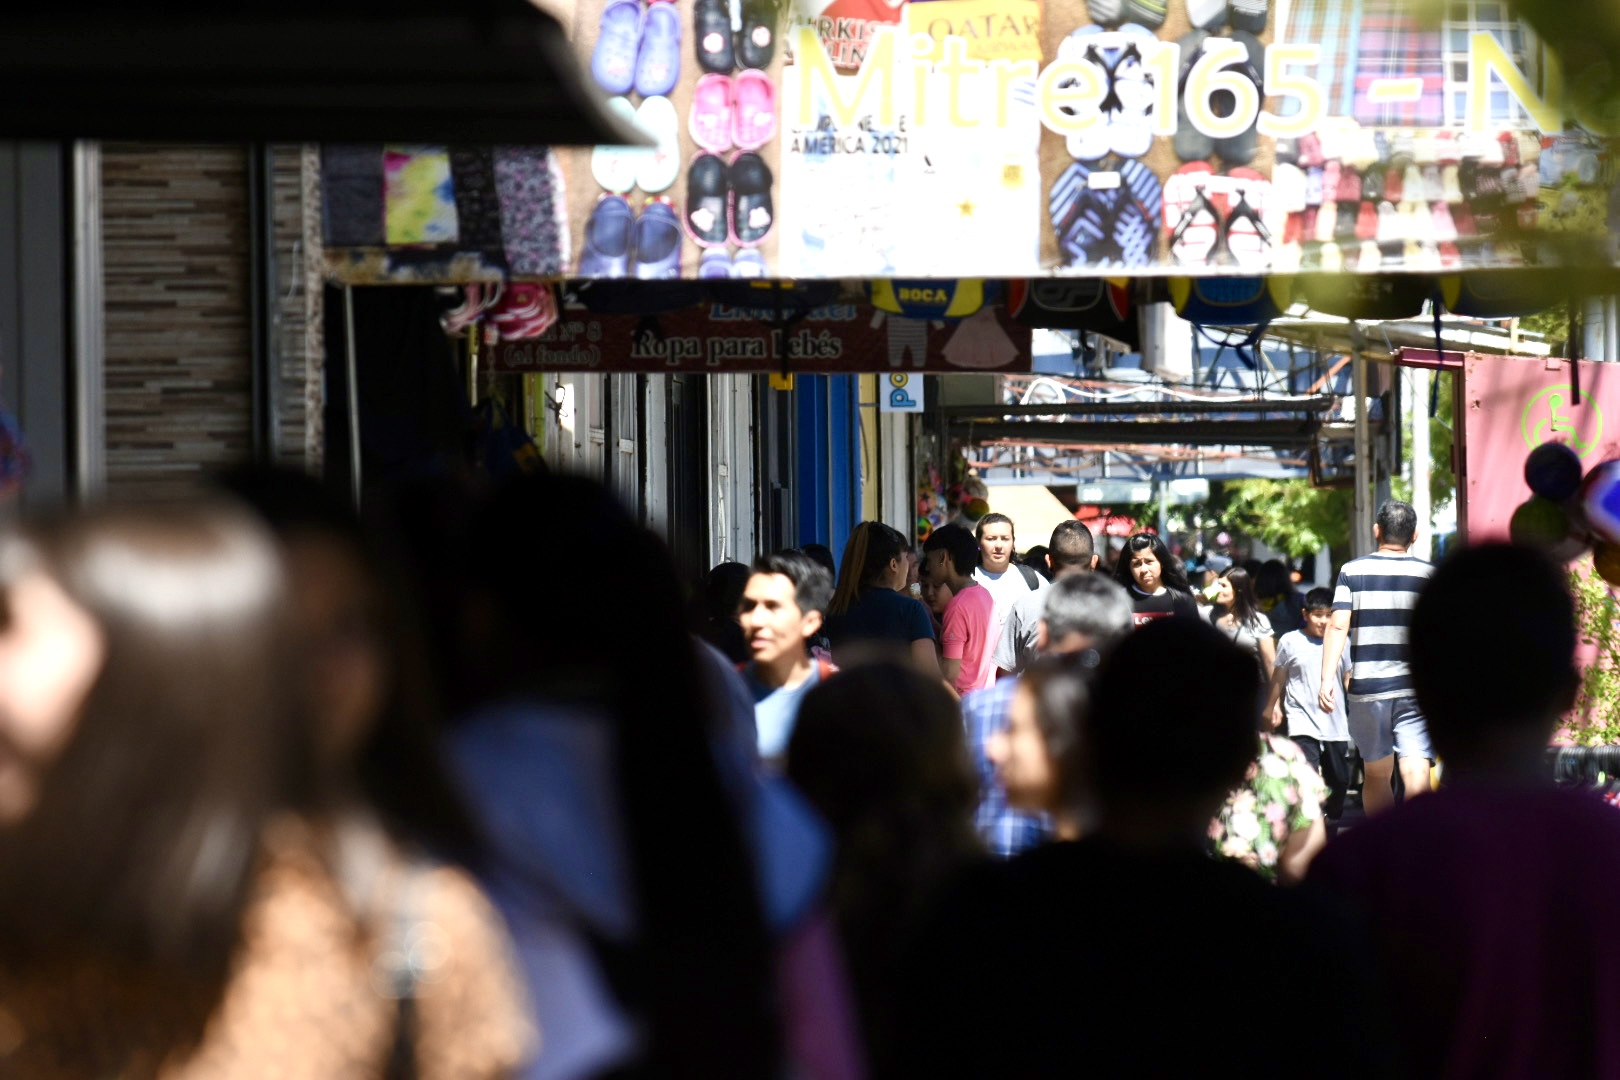 Las ventas en Neuquén capital se redujeron en la zona del Bajo (Matías Subat)